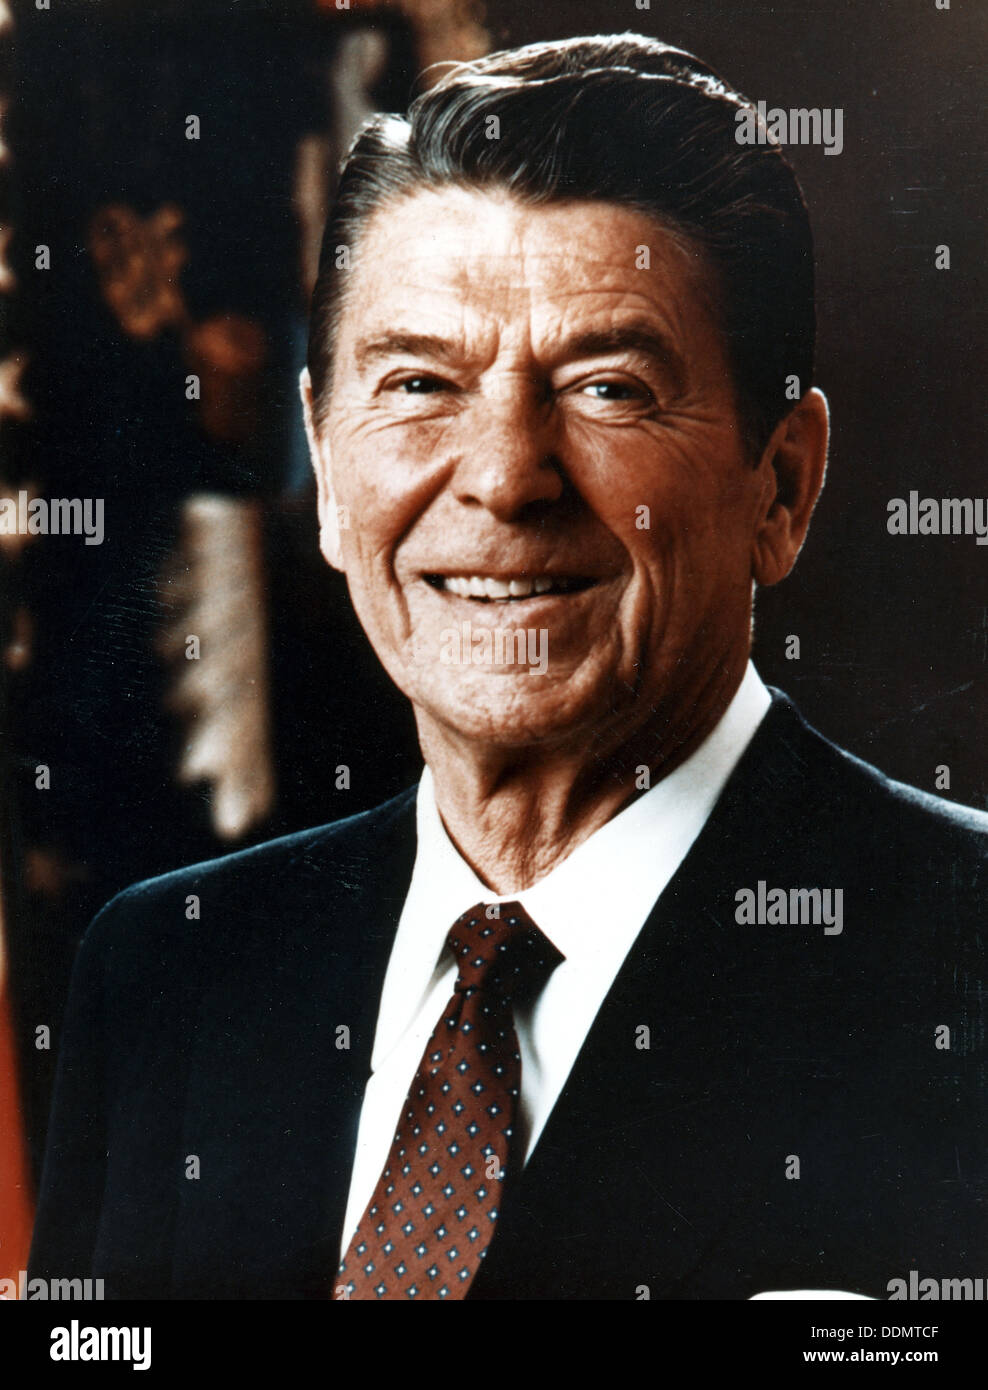 Ronald Reagan (1911- ), ancien président américain, 1985. Artiste : Inconnu Banque D'Images